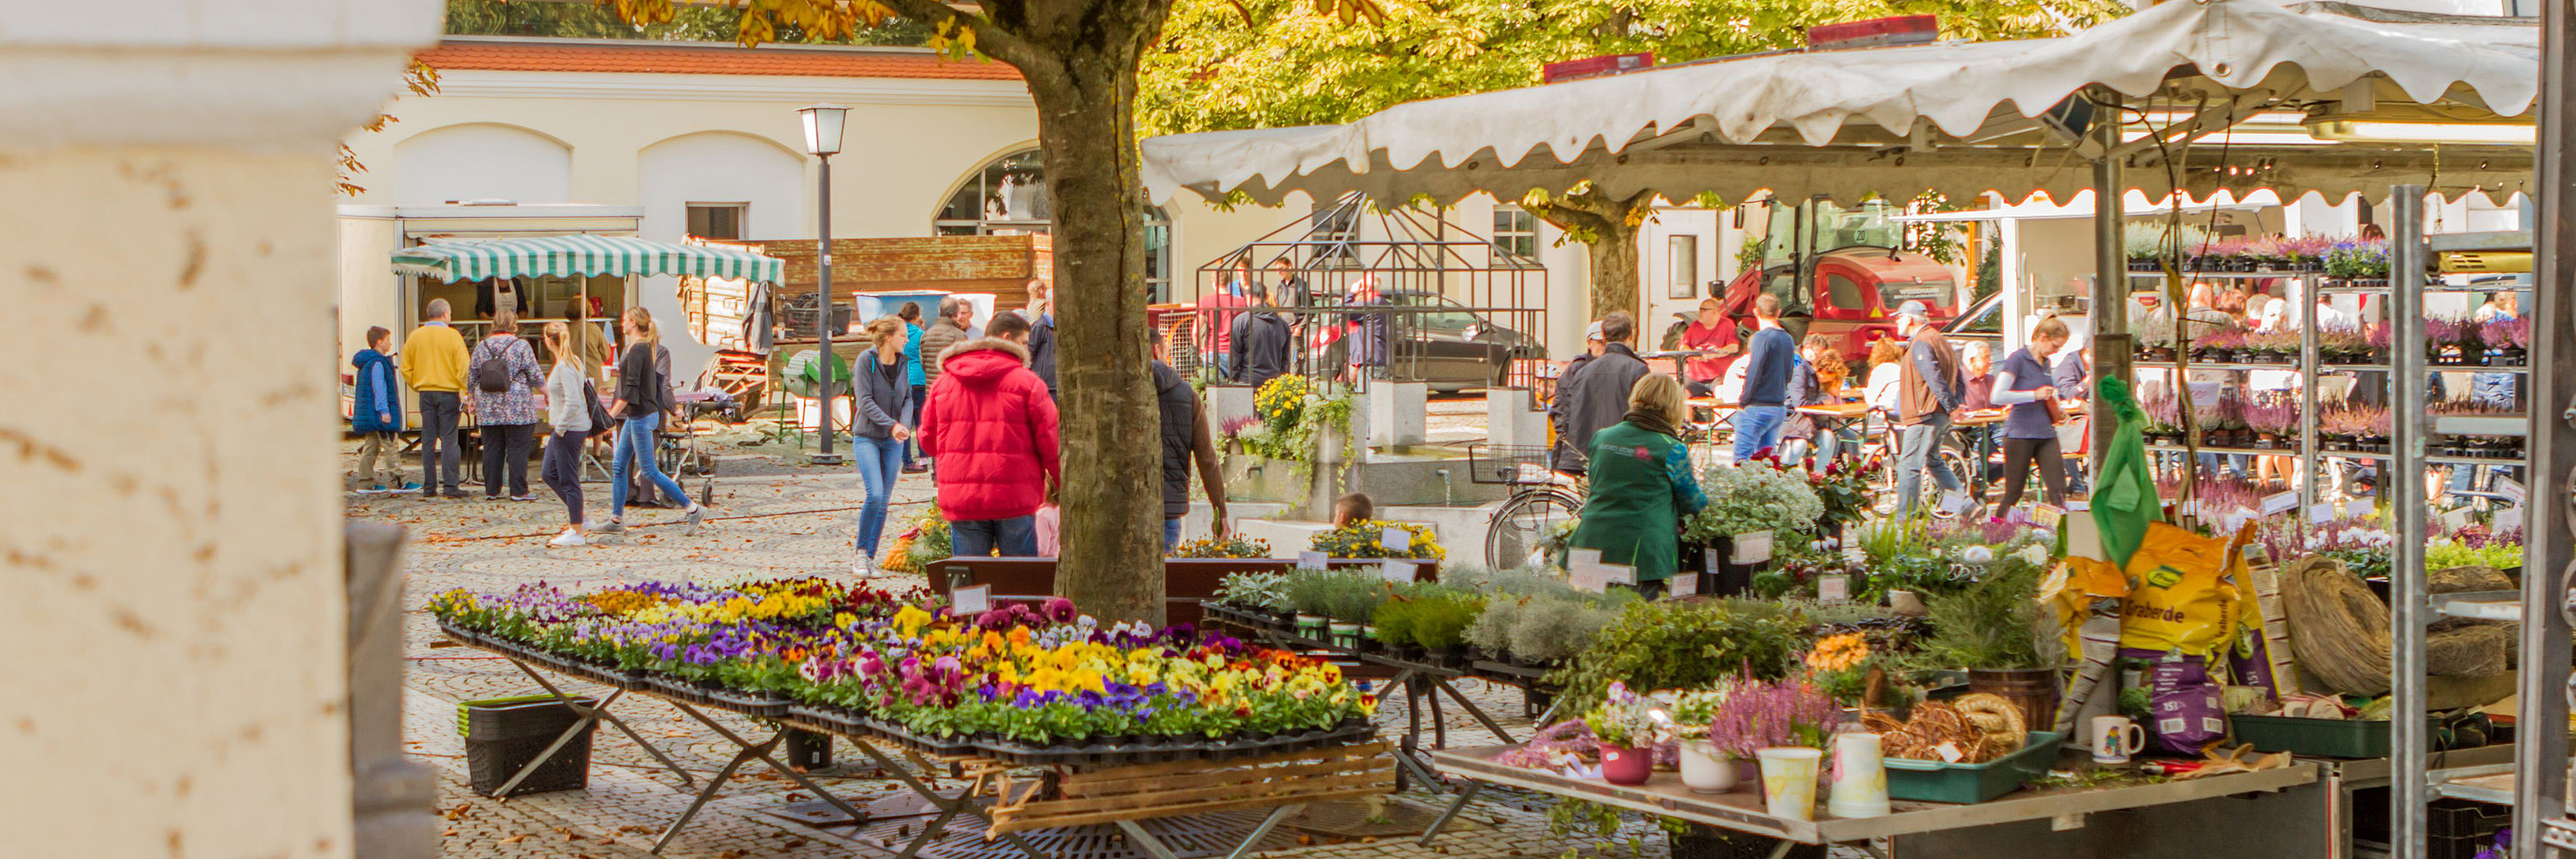 Bauernmarkt im Dossenbergerhof. Foto: Philipp Röger für die Stadt Günzburg